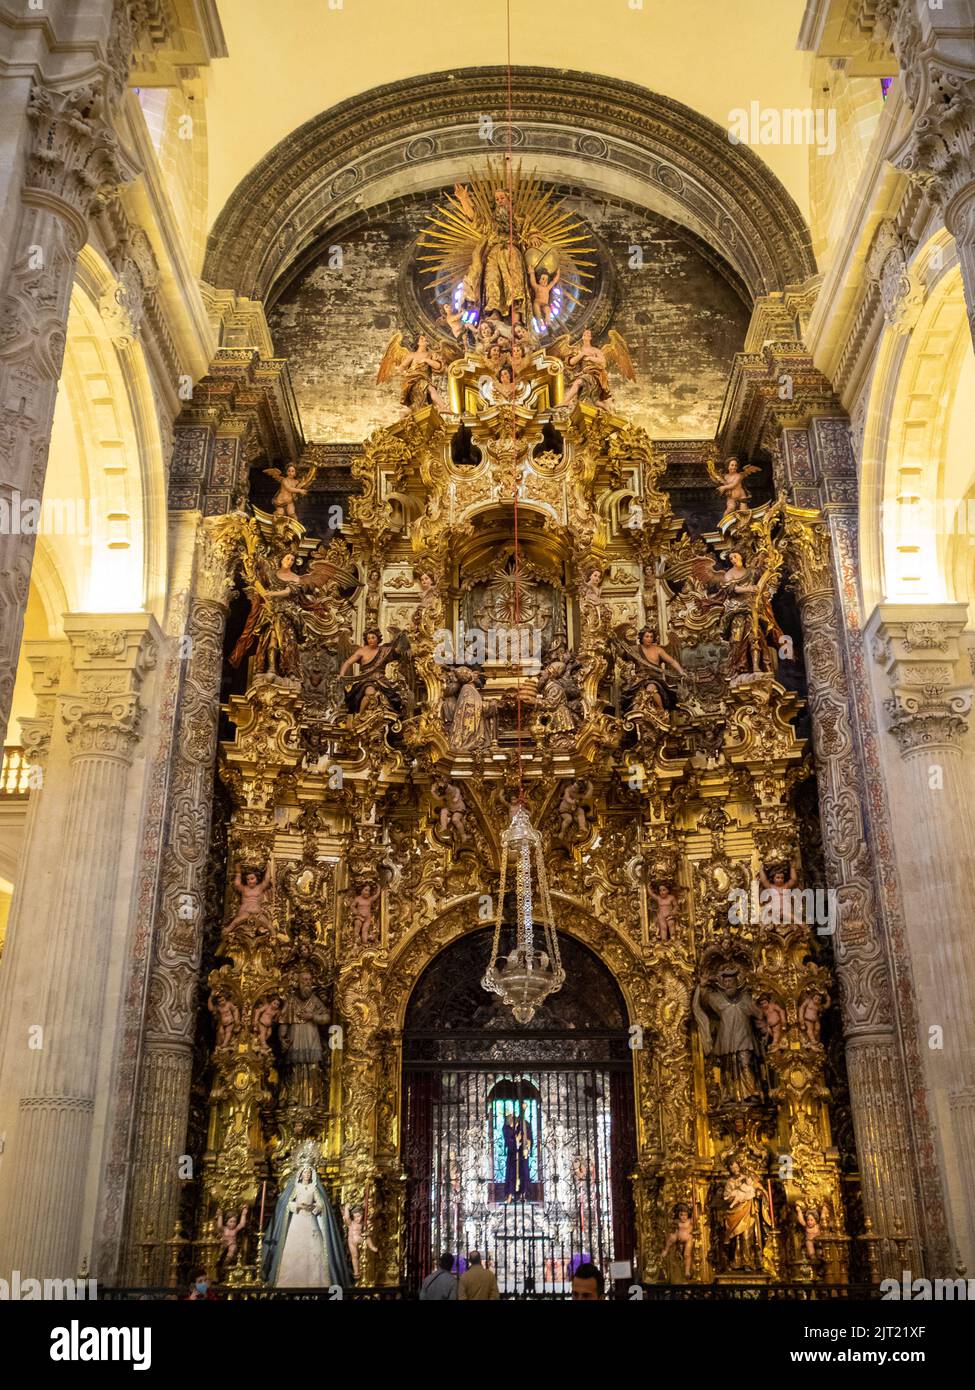 Sacrament Chapel altarpiece, Iglesia Colegial del Divino Salvador, Seville Stock Photo